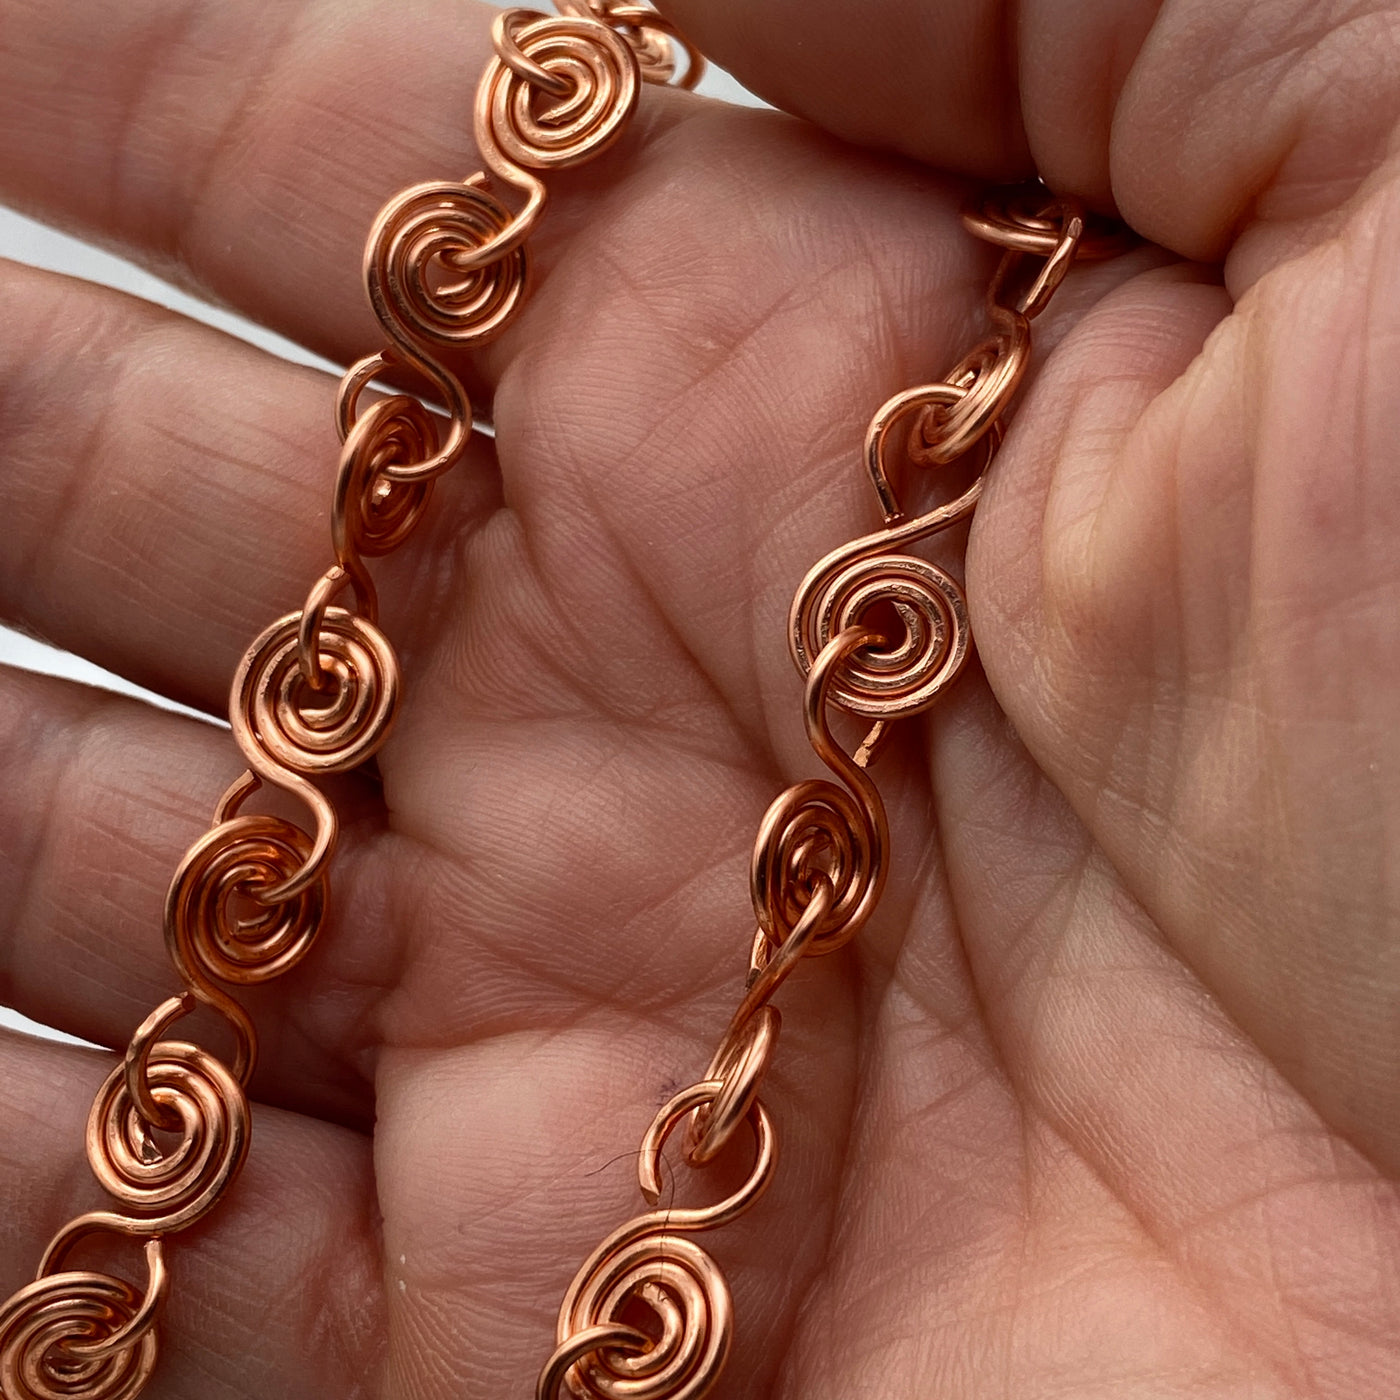 Copper spirals necklace. 